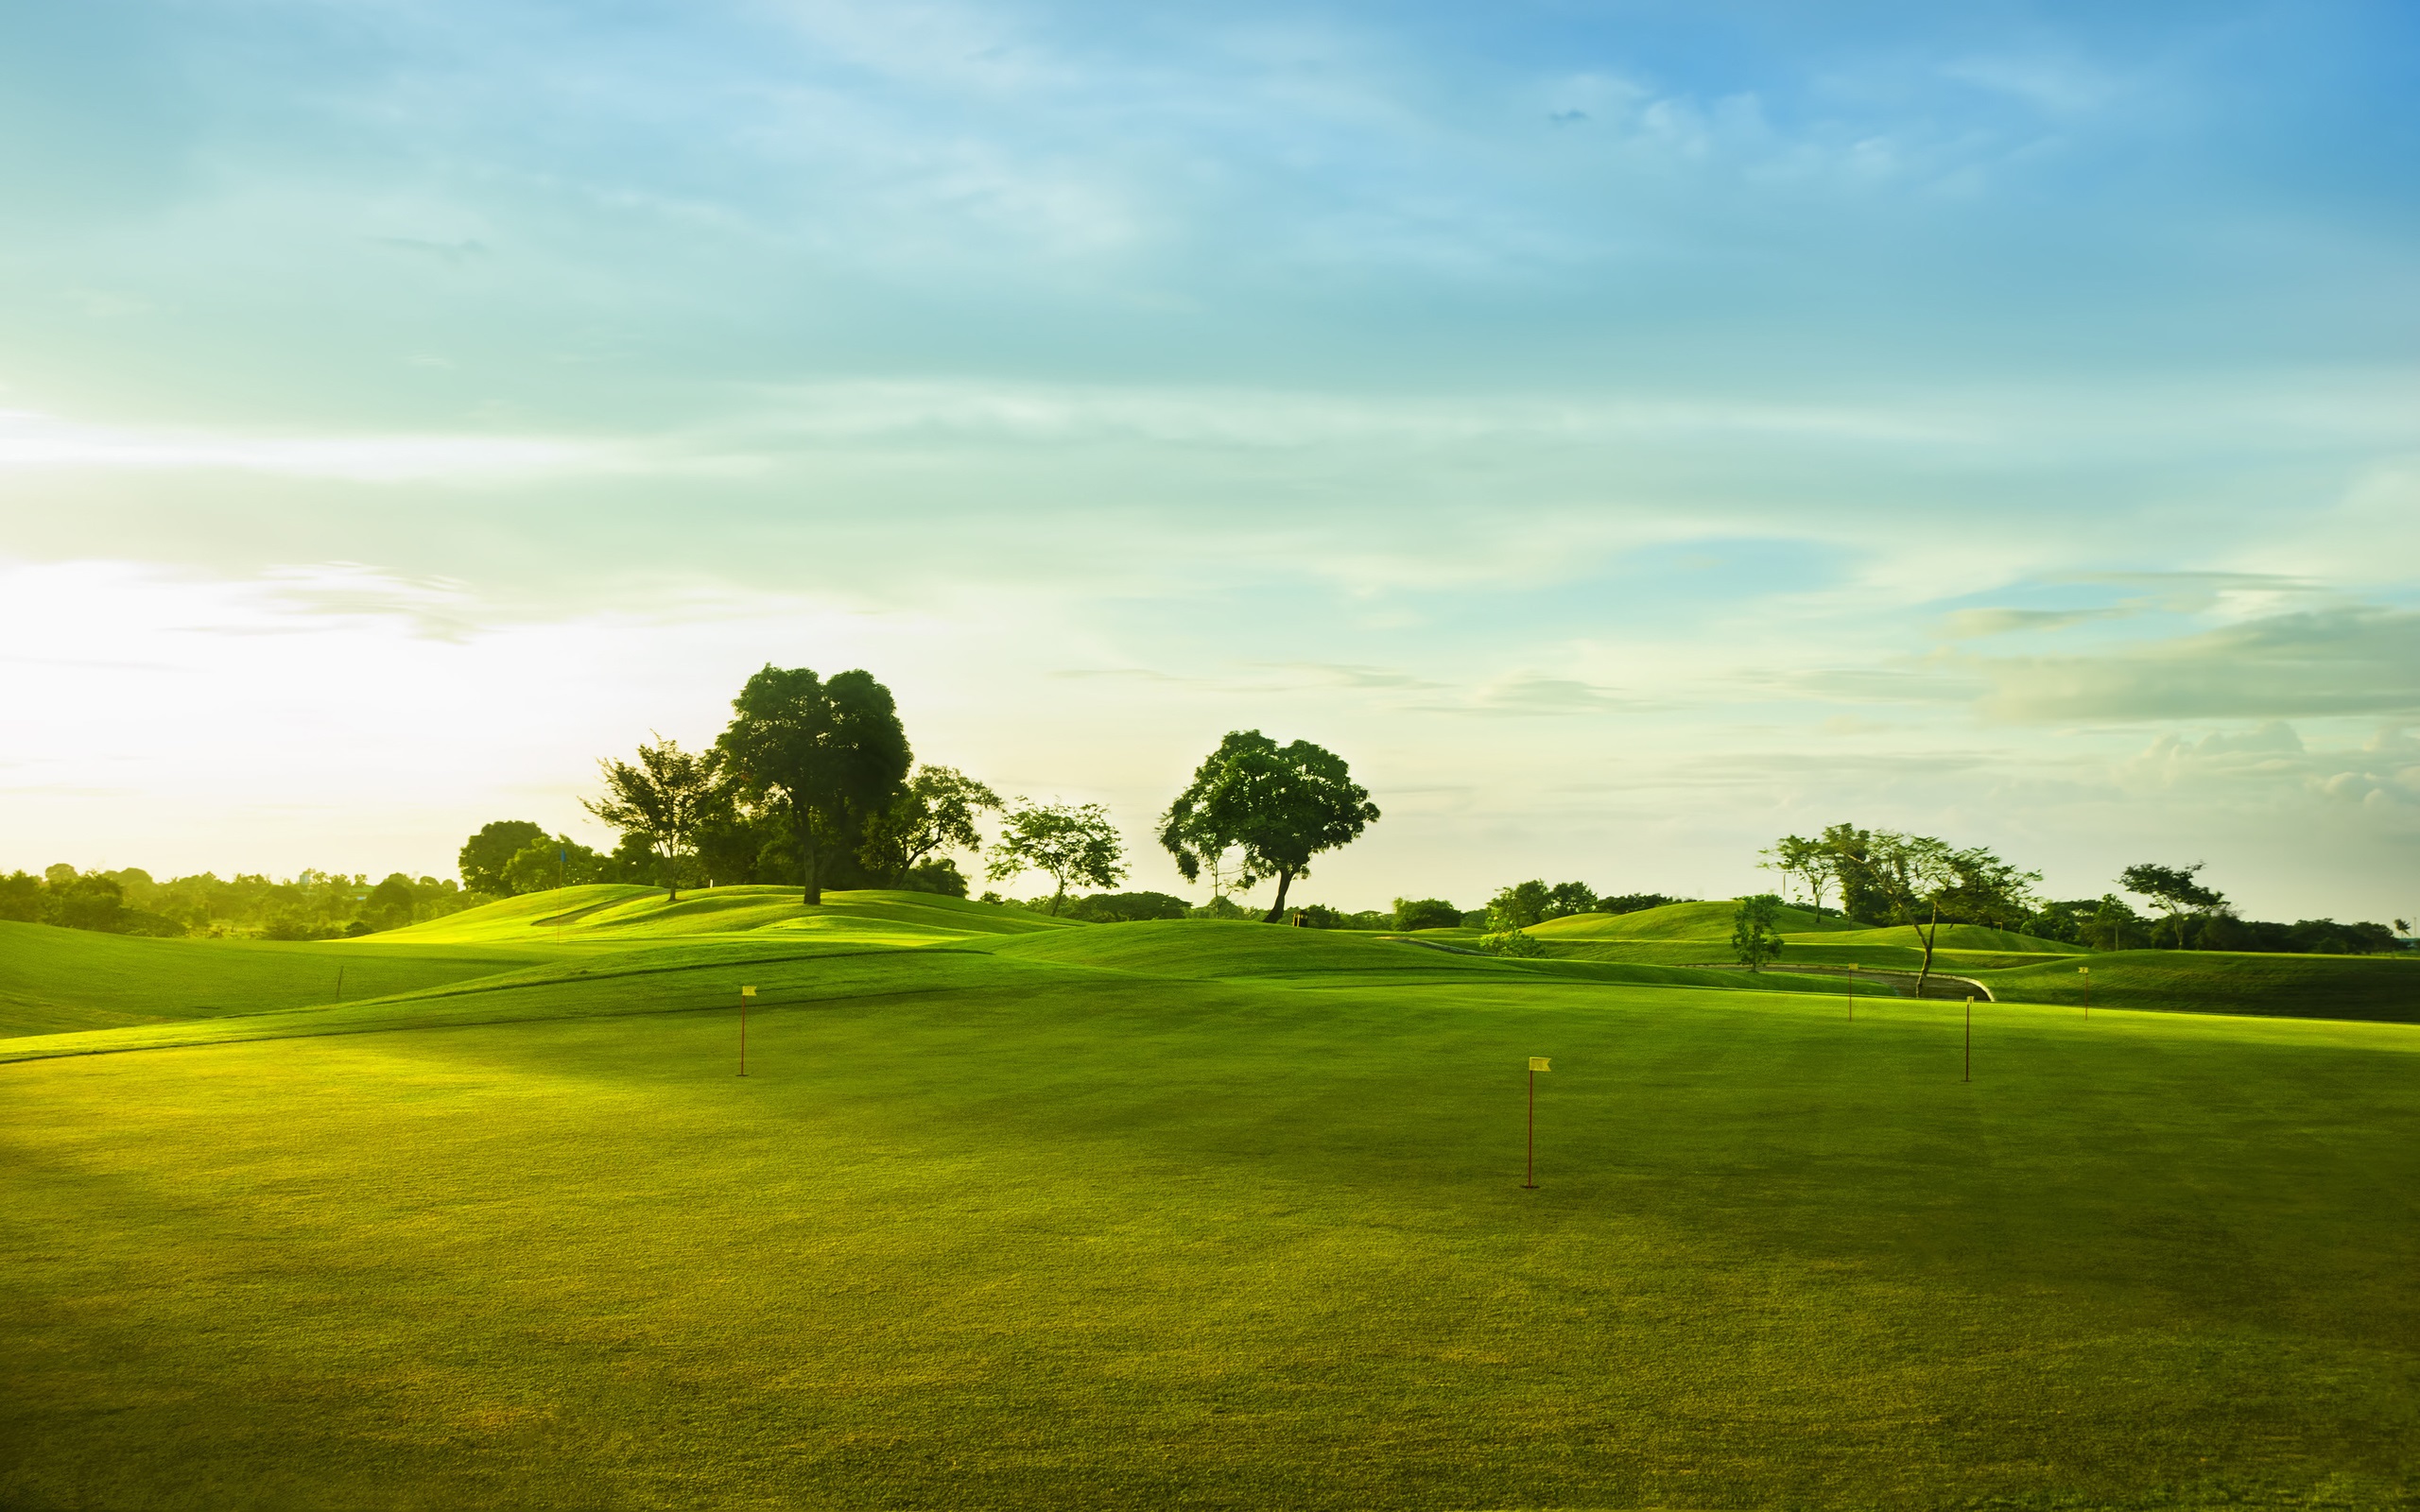 Lush Green Golf Course Grass Wallpaper